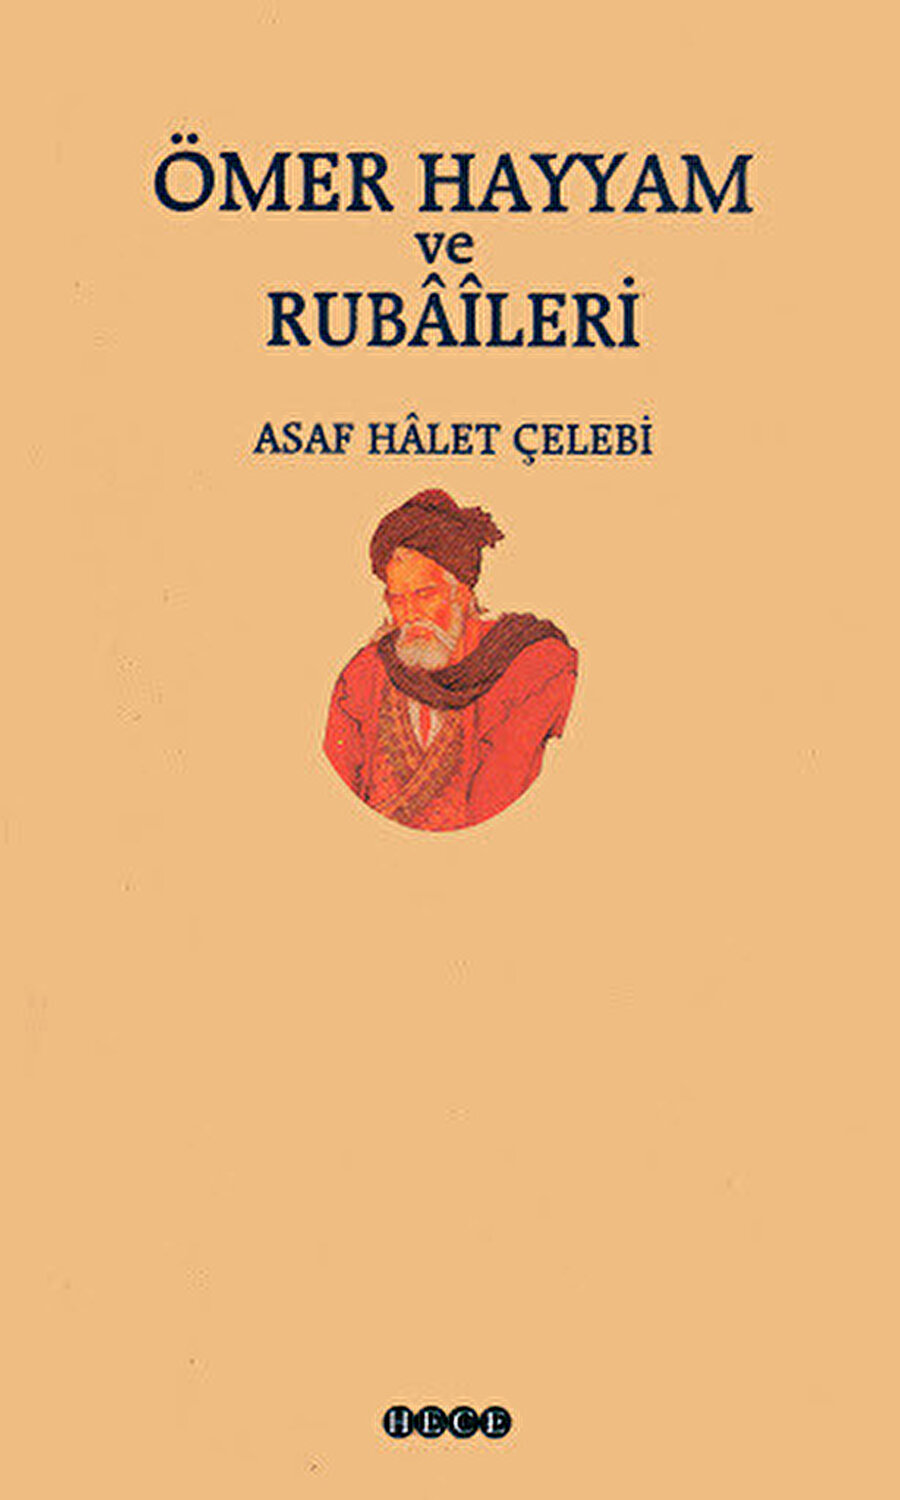 (Ömer Hayyâm ve Rubaileri, Asaf Halet Çelebi, Hece, 2003)